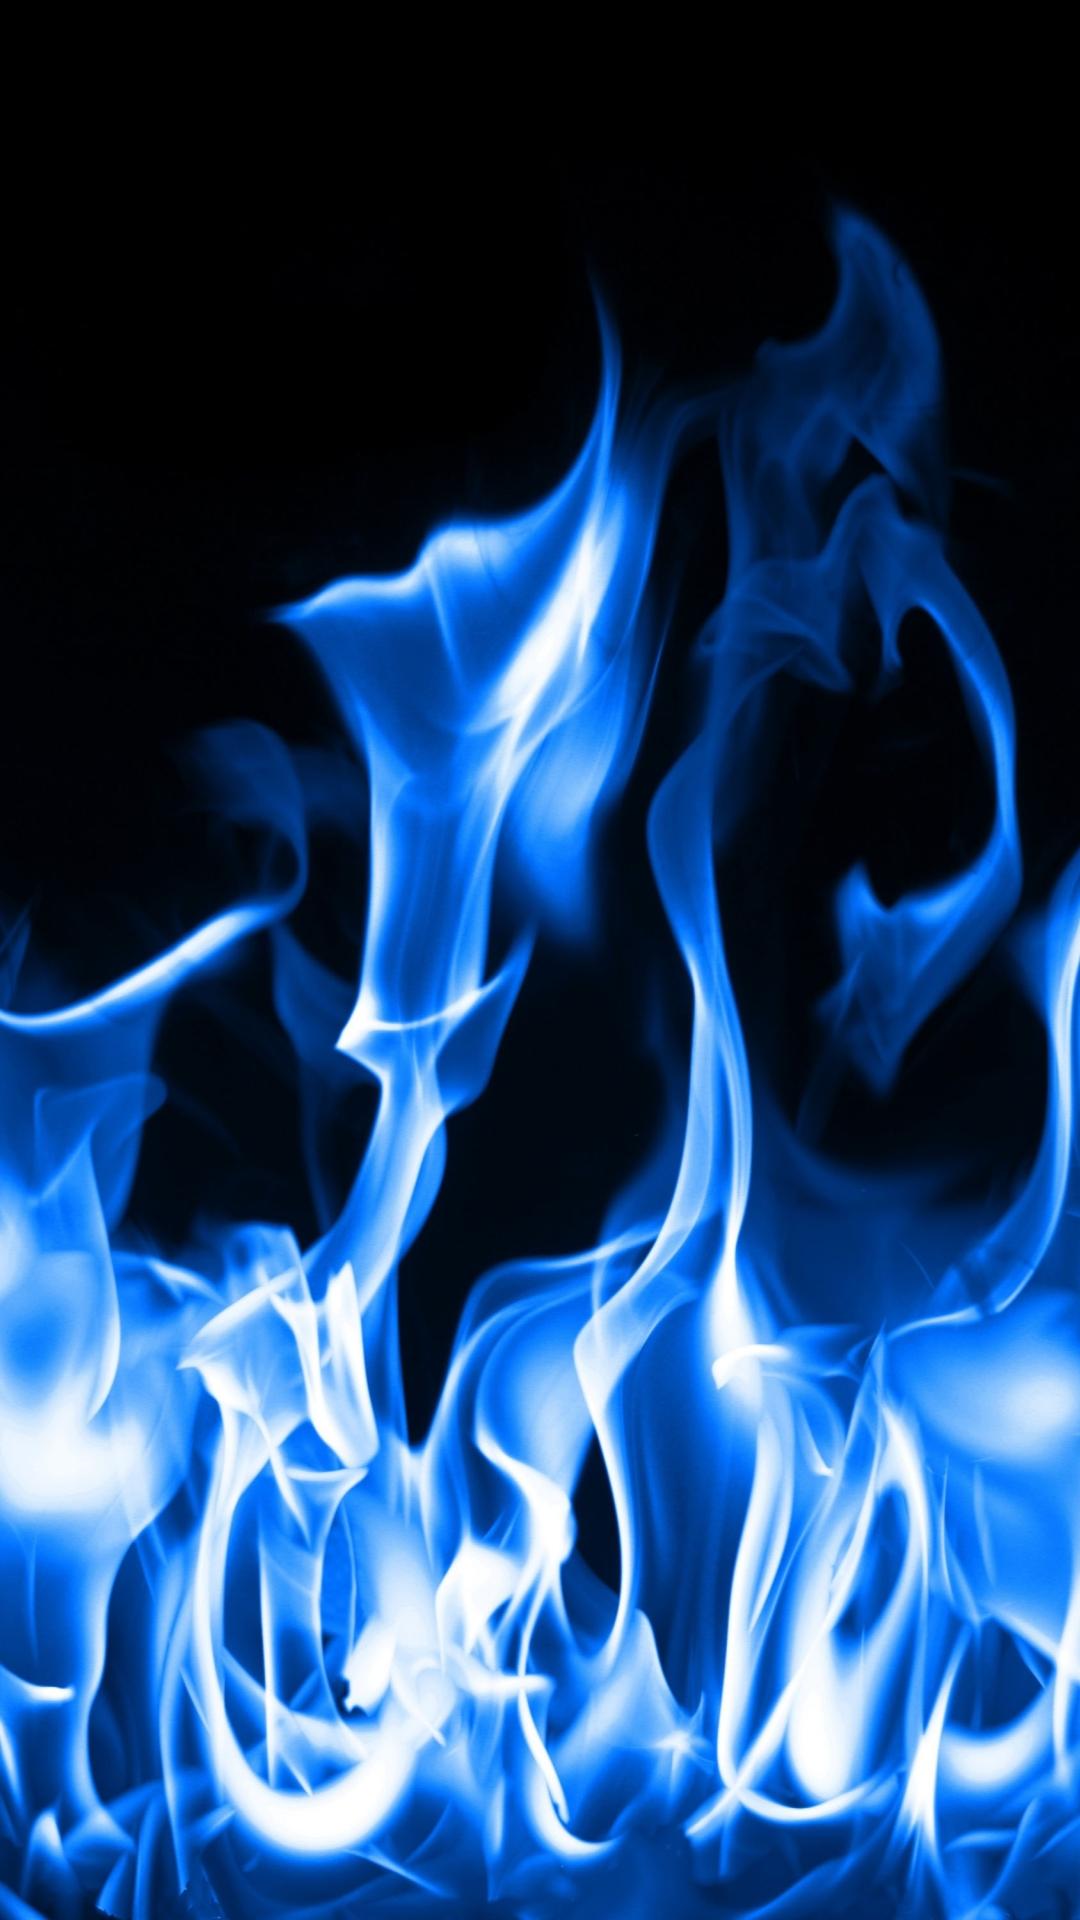 Blue FireSamsung Wallpaper Download. Free Samsung Wallpaper Download